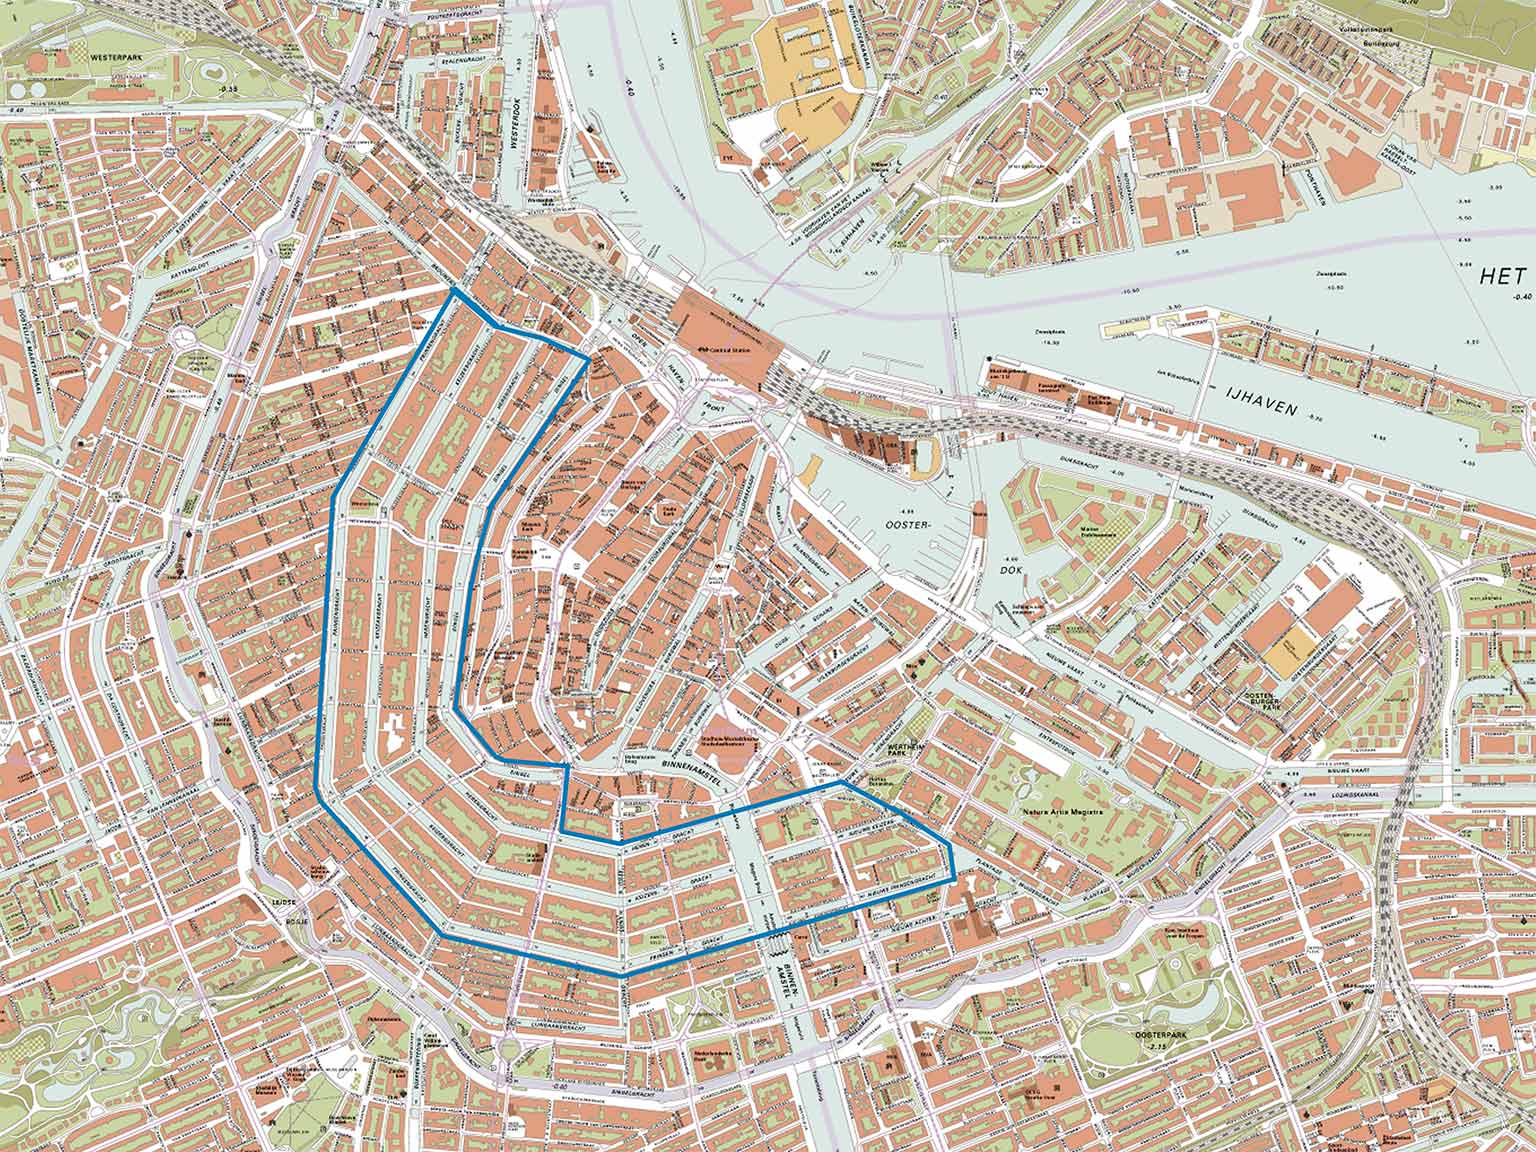 De Amsterdamse grachtengordel omlijnd op de kaart